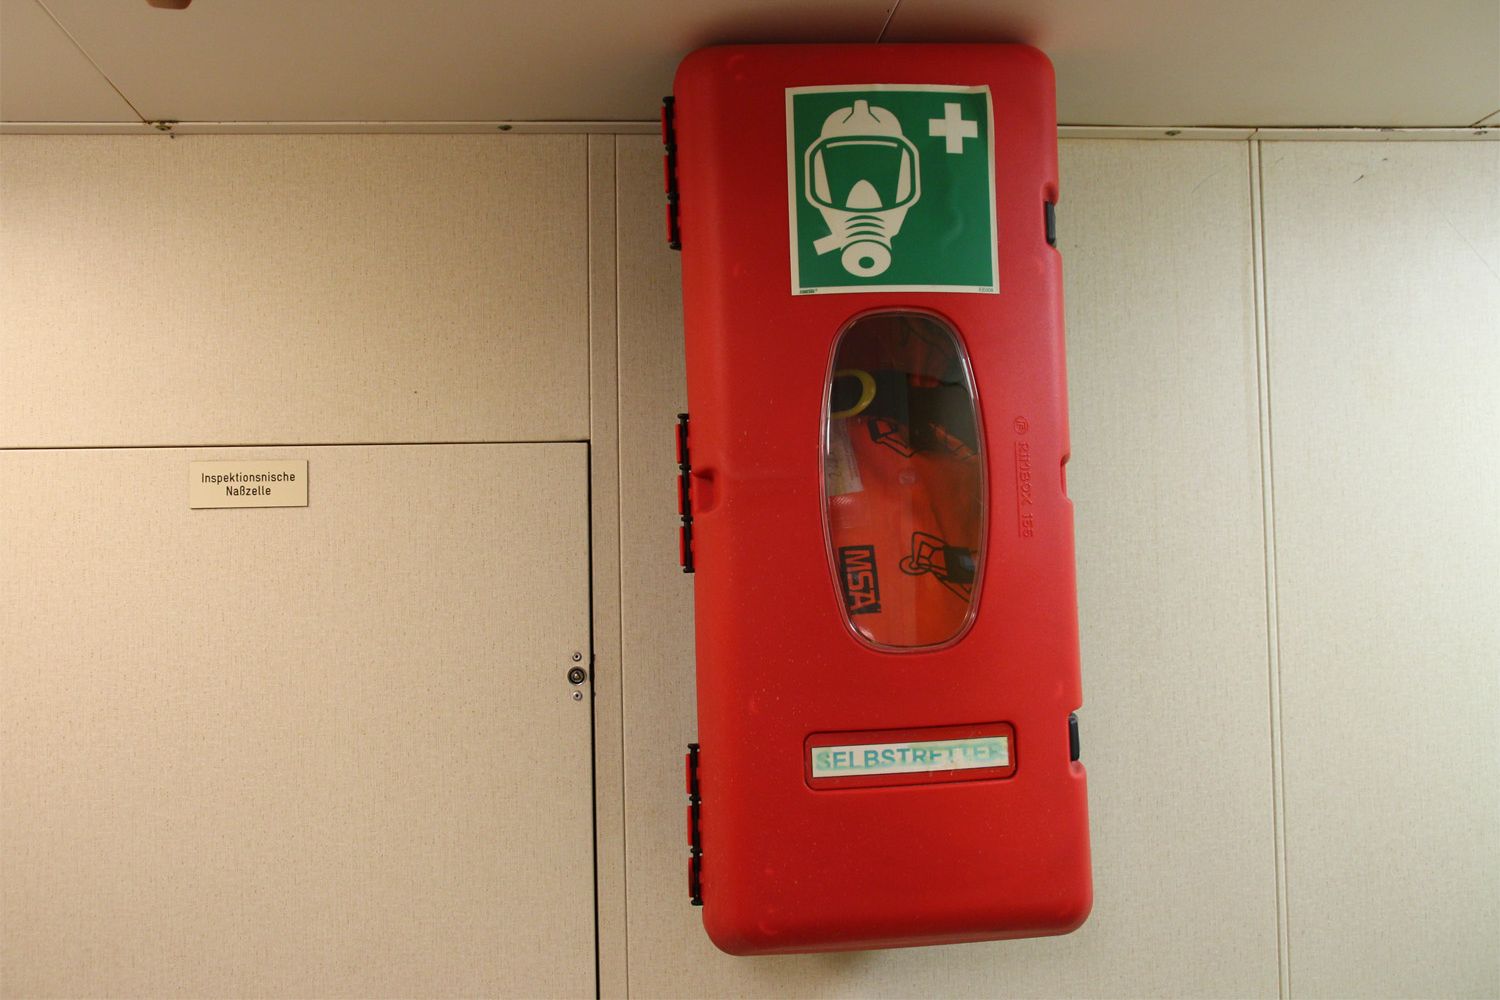 Ein roter Kasten an der Wand in dem ein Selbstretteratemgerät für den Notfall liegt.